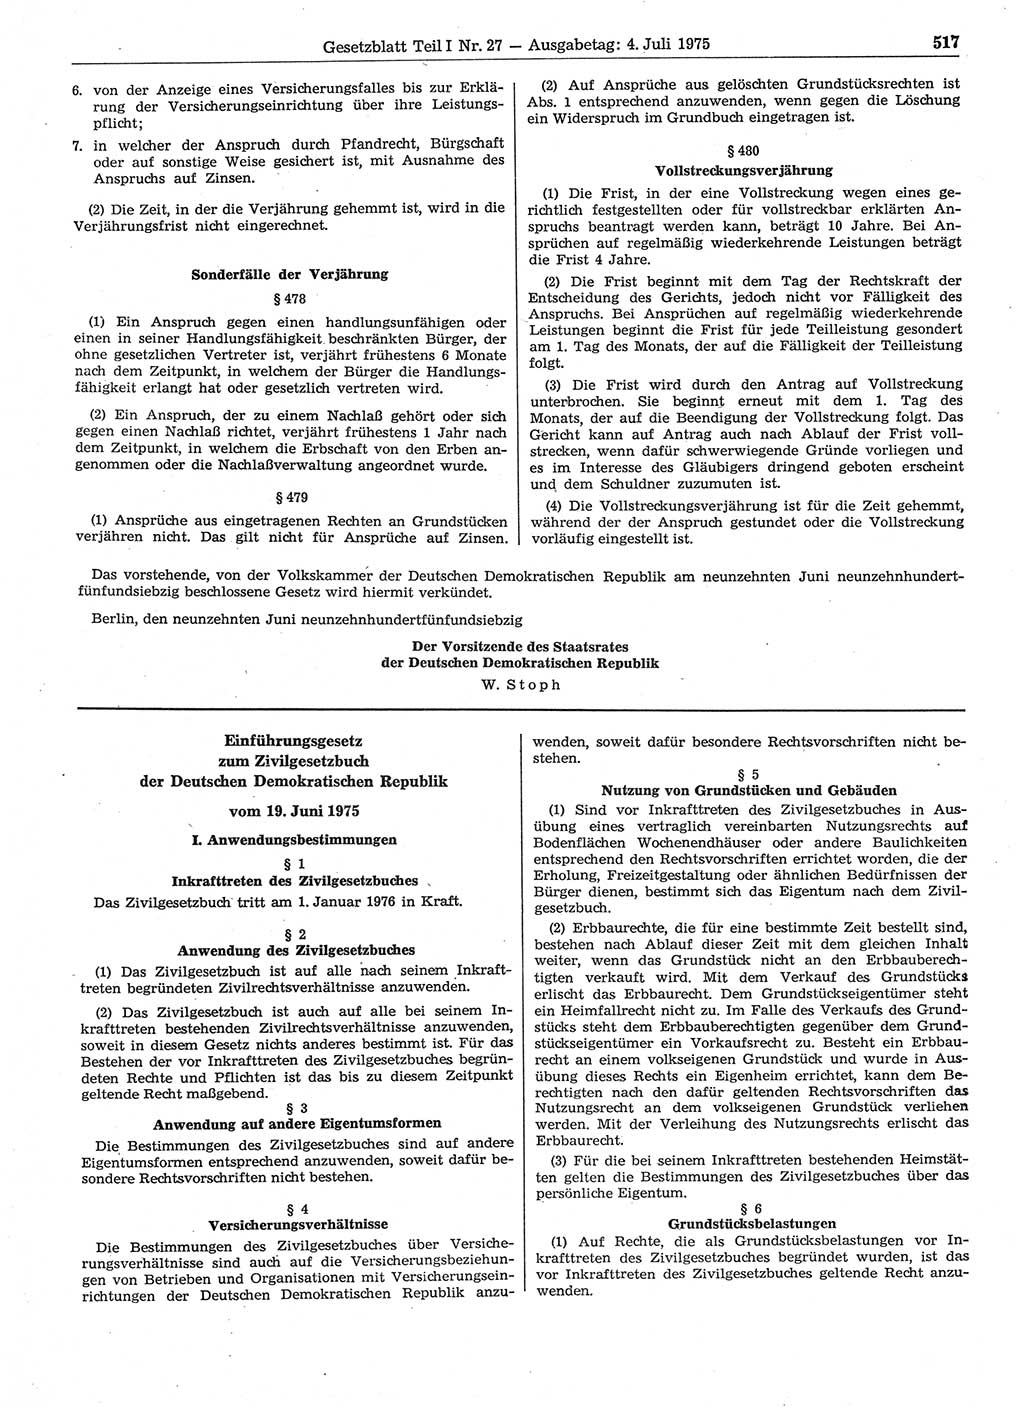 Gesetzblatt (GBl.) der Deutschen Demokratischen Republik (DDR) Teil Ⅰ 1975, Seite 517 (GBl. DDR Ⅰ 1975, S. 517)